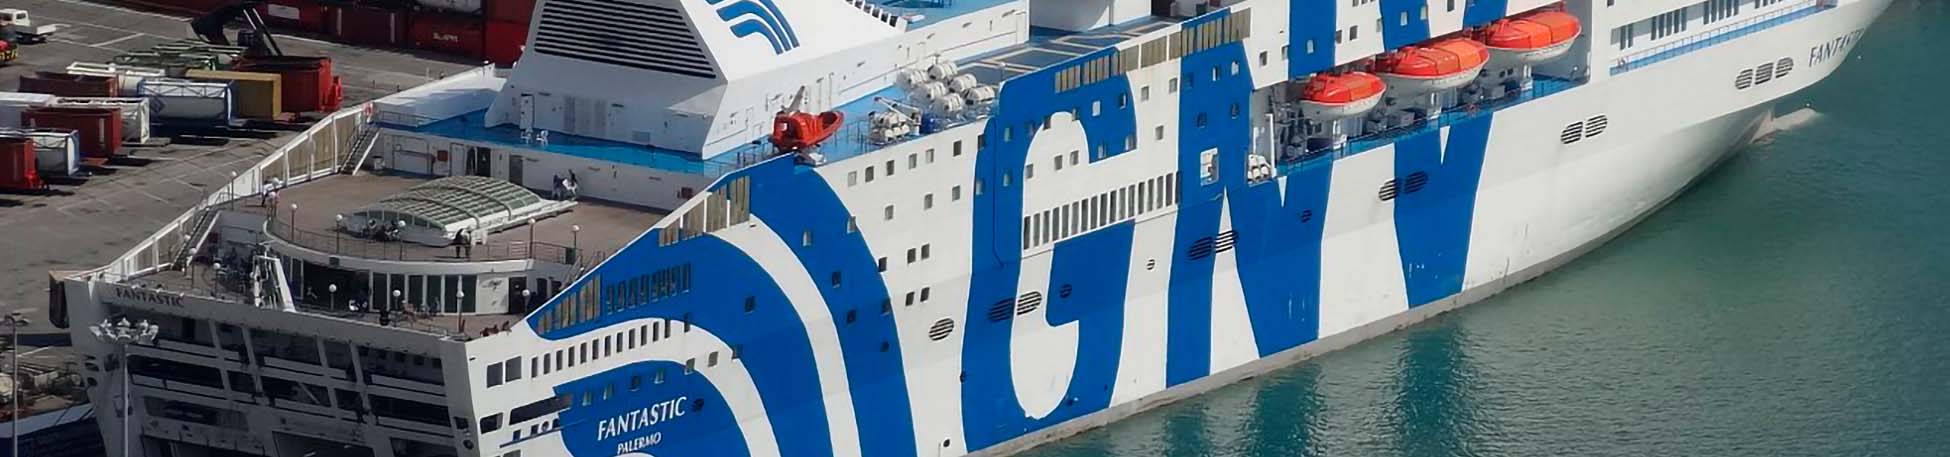 Imatge recurs del port de destinació Tànger Med per a la ruta en ferry Gènova - Tànger Med